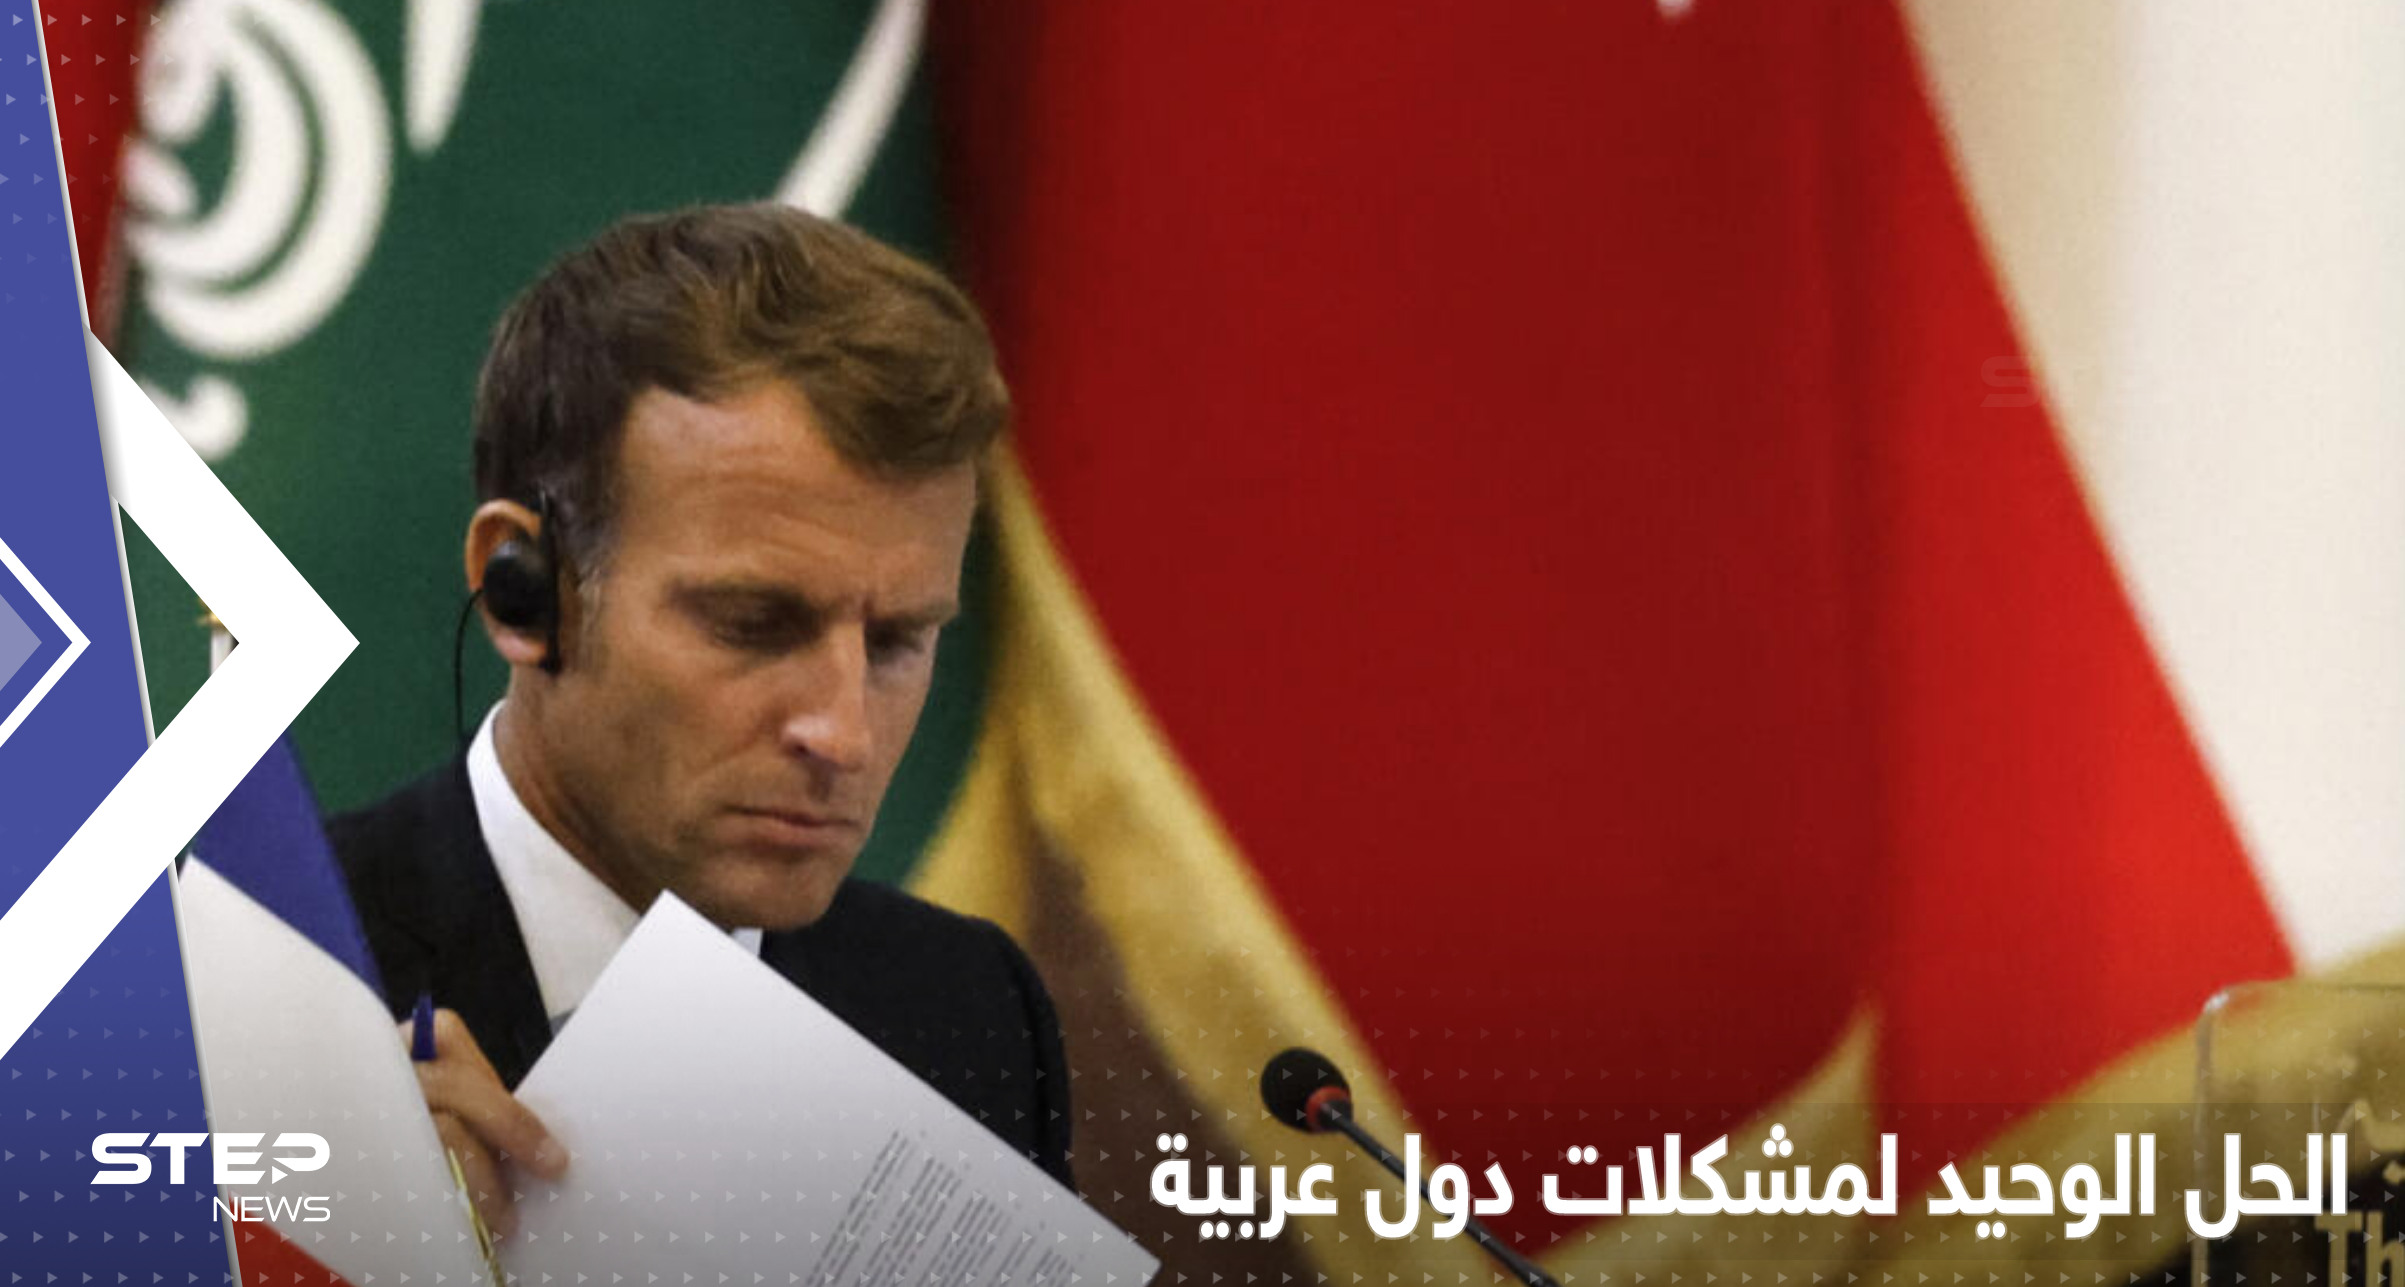 مشكلات 3 دول عربية تحل بطريقة واحدة يكشفها الرئيس الفرنسي